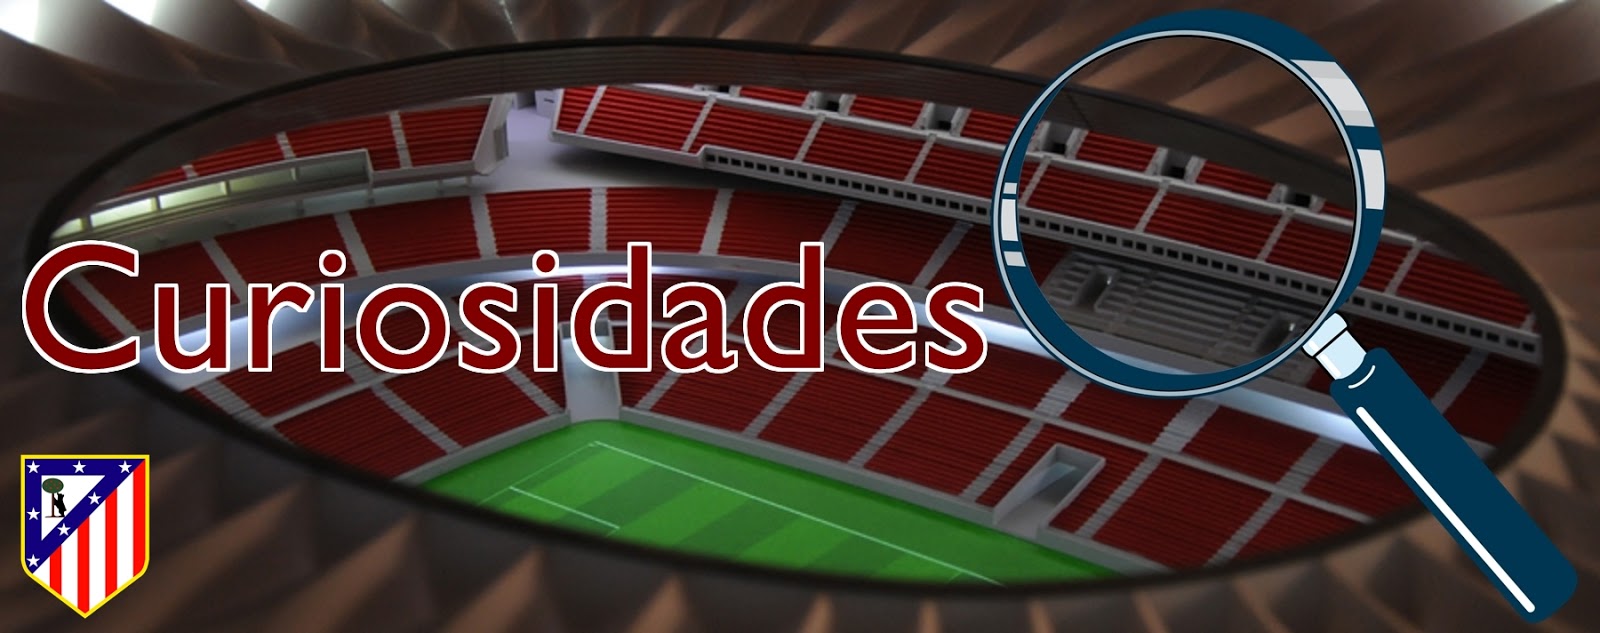 Nuevoestadioatleti: Nuevo estadio Club Atlético de Madrid (Wanda Metropolitano): Curiosidades